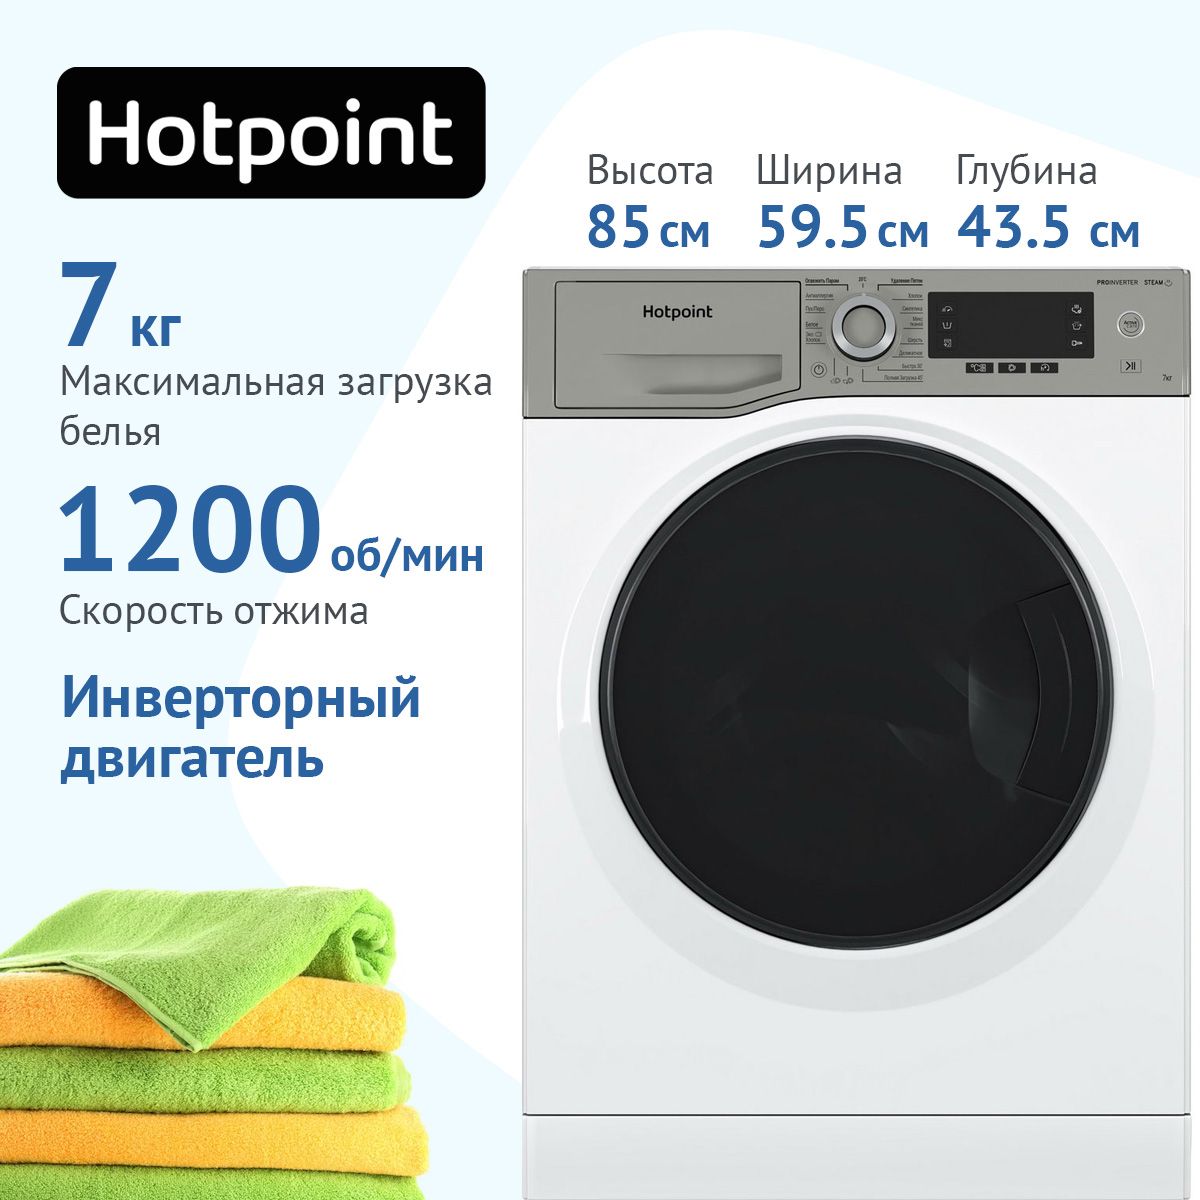 Hotpoint nsd 8249 zd ave ru